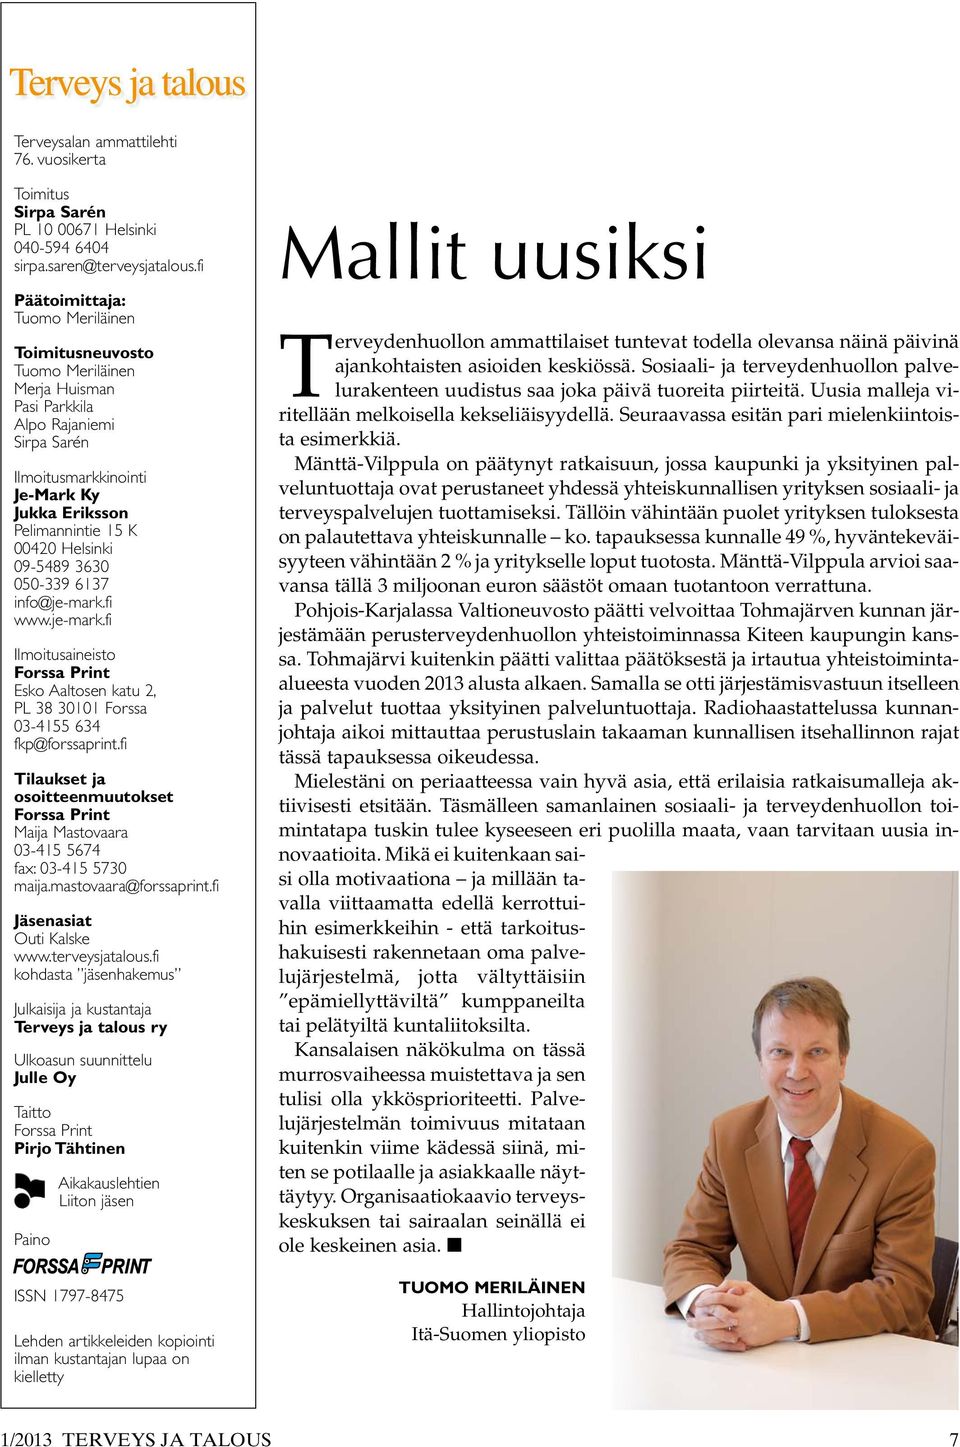 Helsinki 09-5489 3630 050-339 6137 info@je-mark.fi www.je-mark.fi Ilmoitusaineisto Forssa Print Esko Aaltosen katu 2, PL 38 30101 Forssa 03-4155 634 fkp@forssaprint.